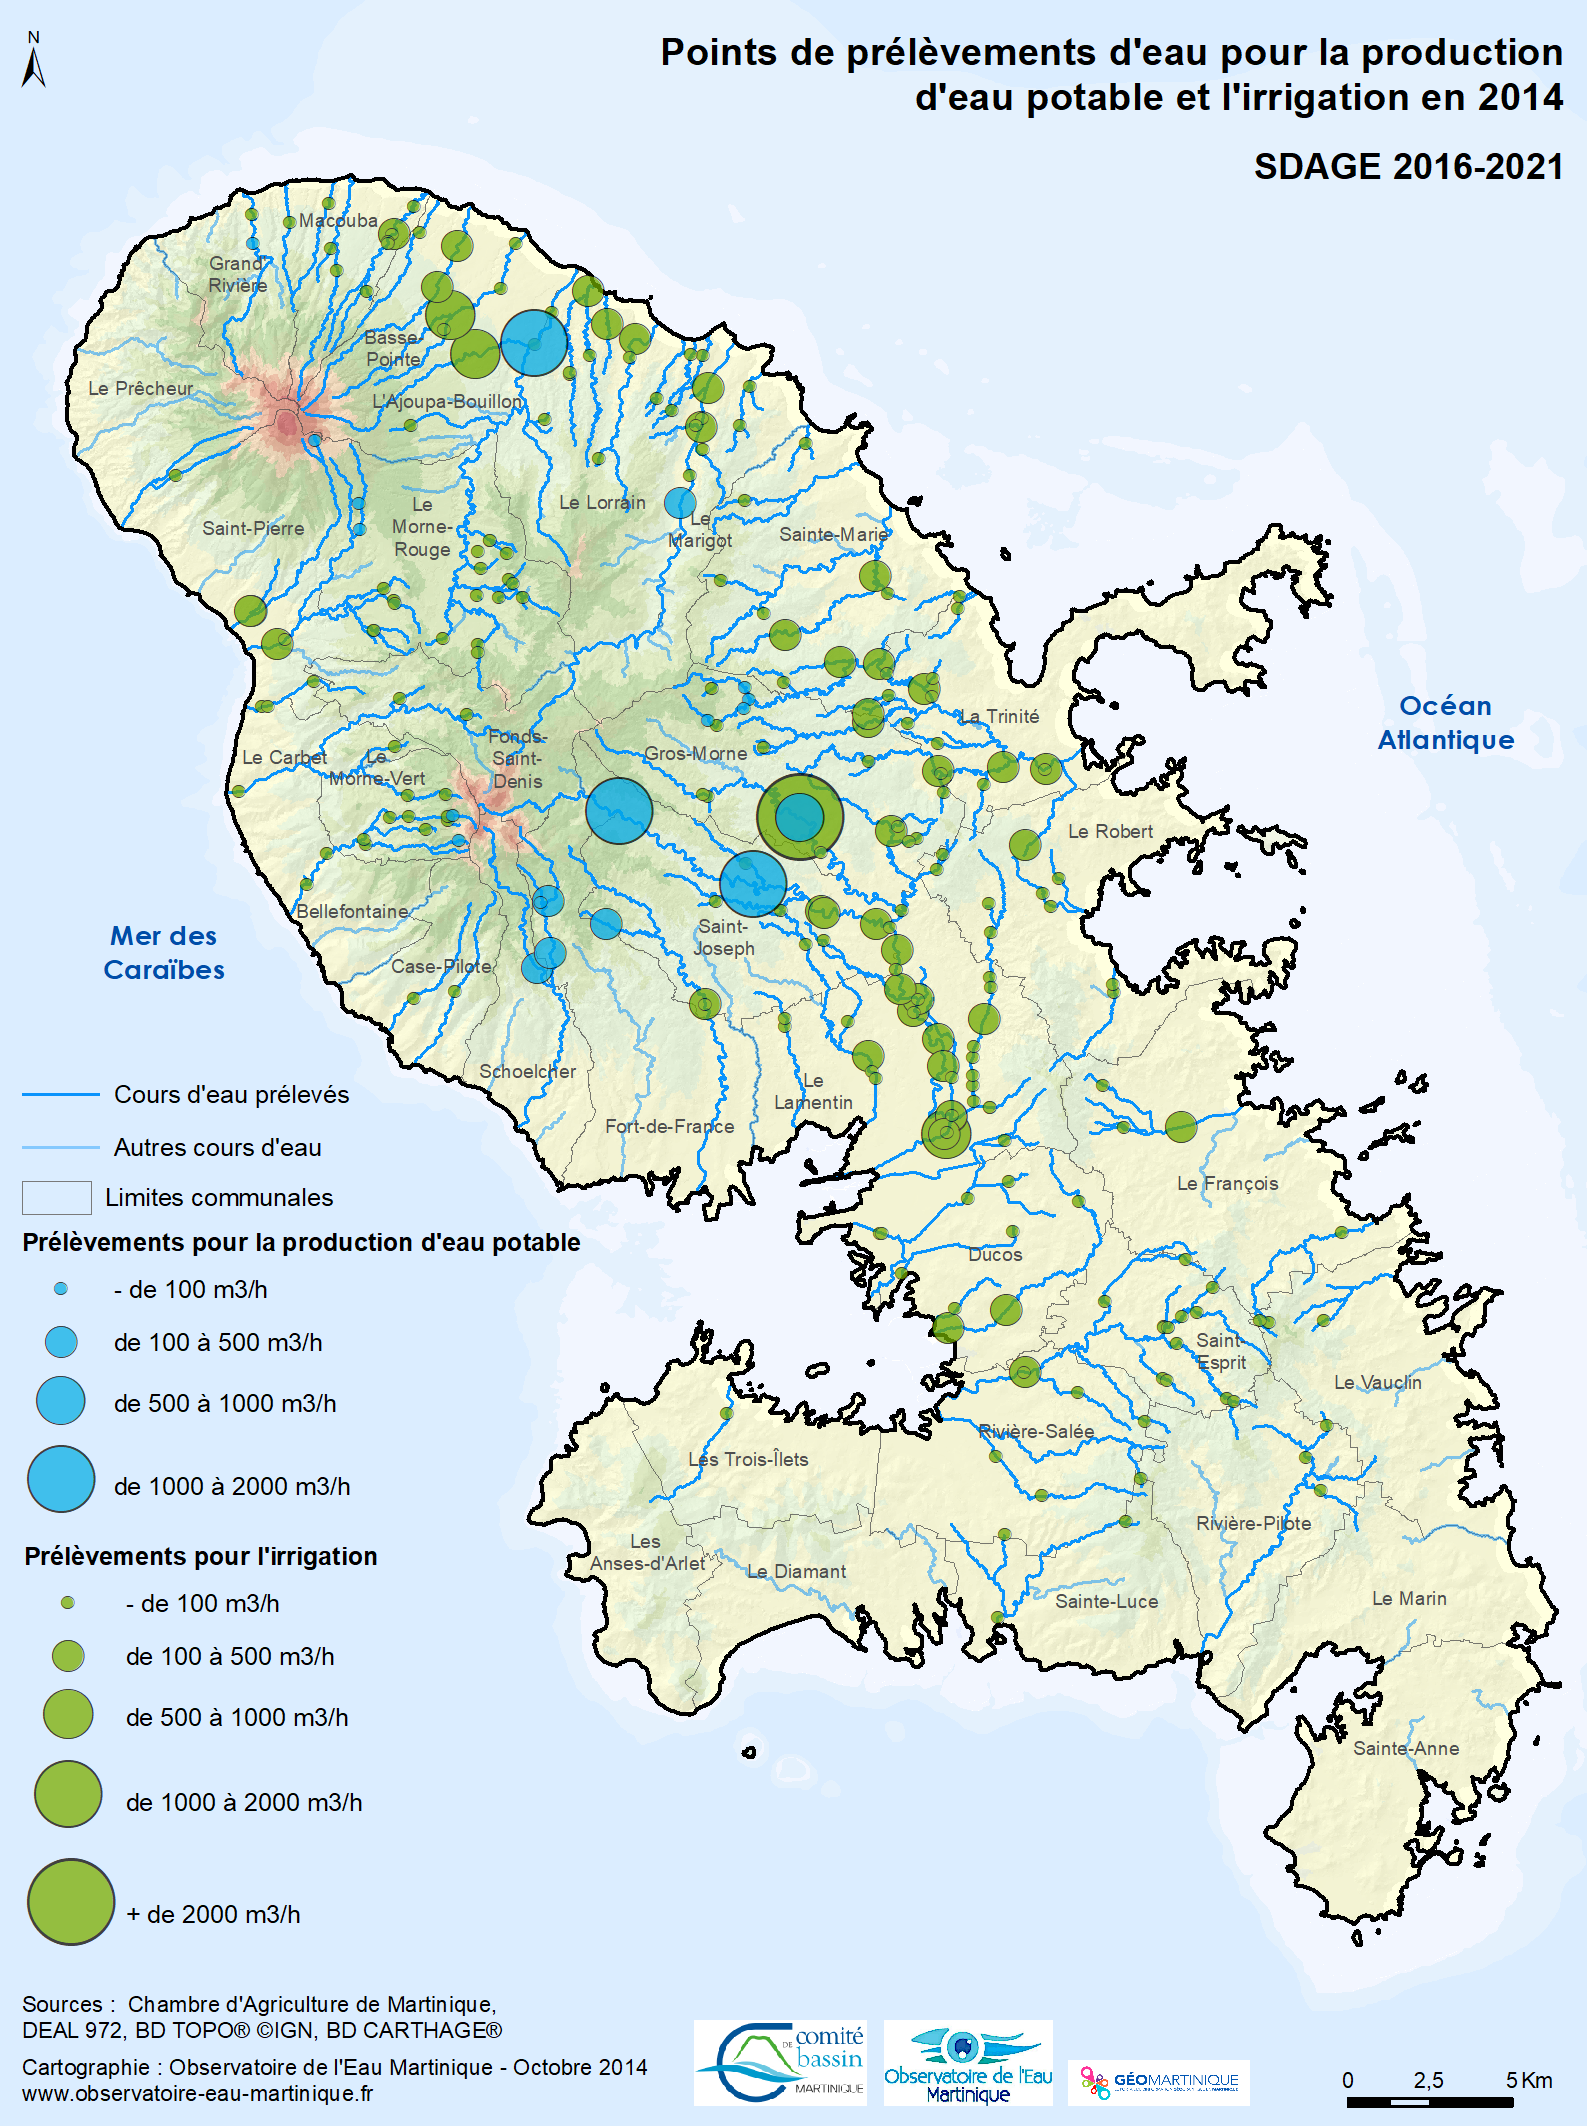 SDAGE 2016-2021 - Points de prélèvement d'eau pour la production d'eau potable et l'irrigation en 2014